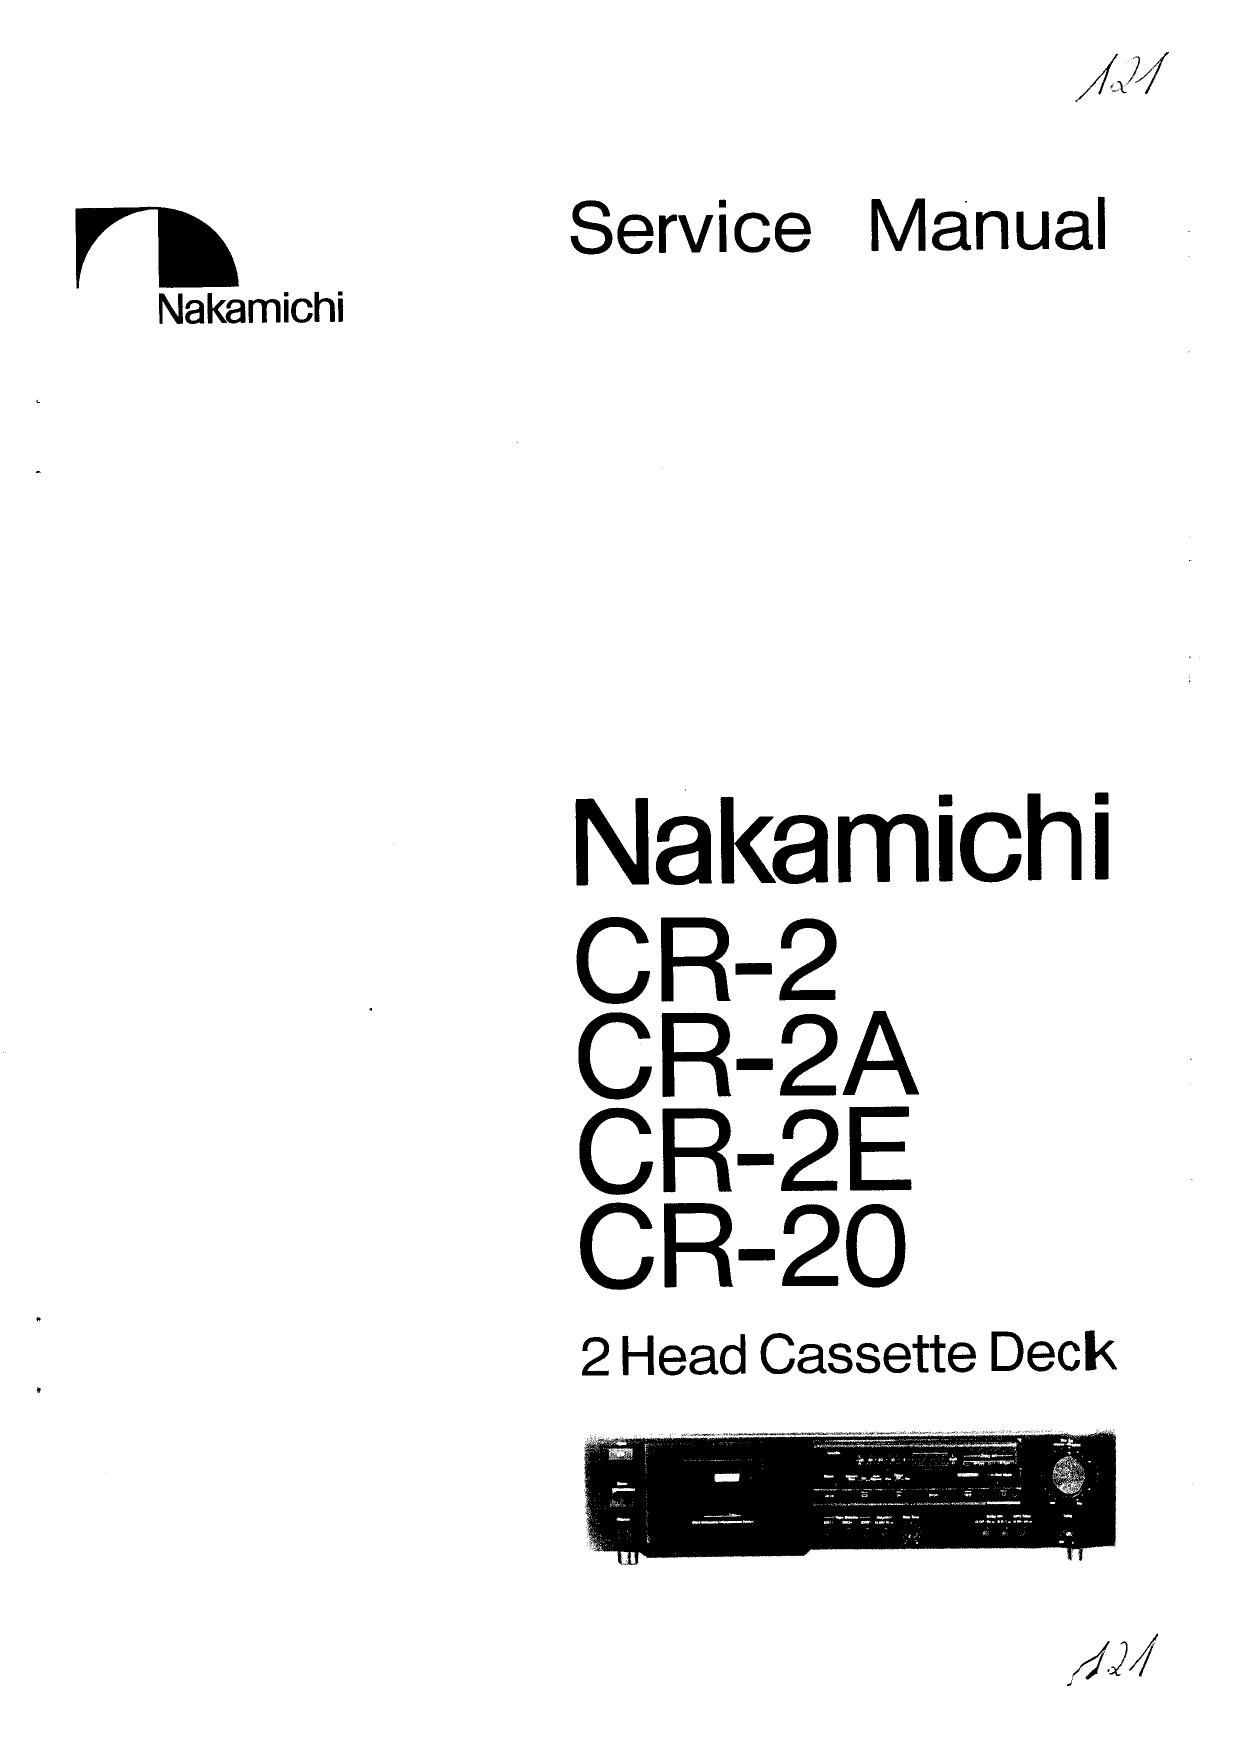 nakamichi manual pdf